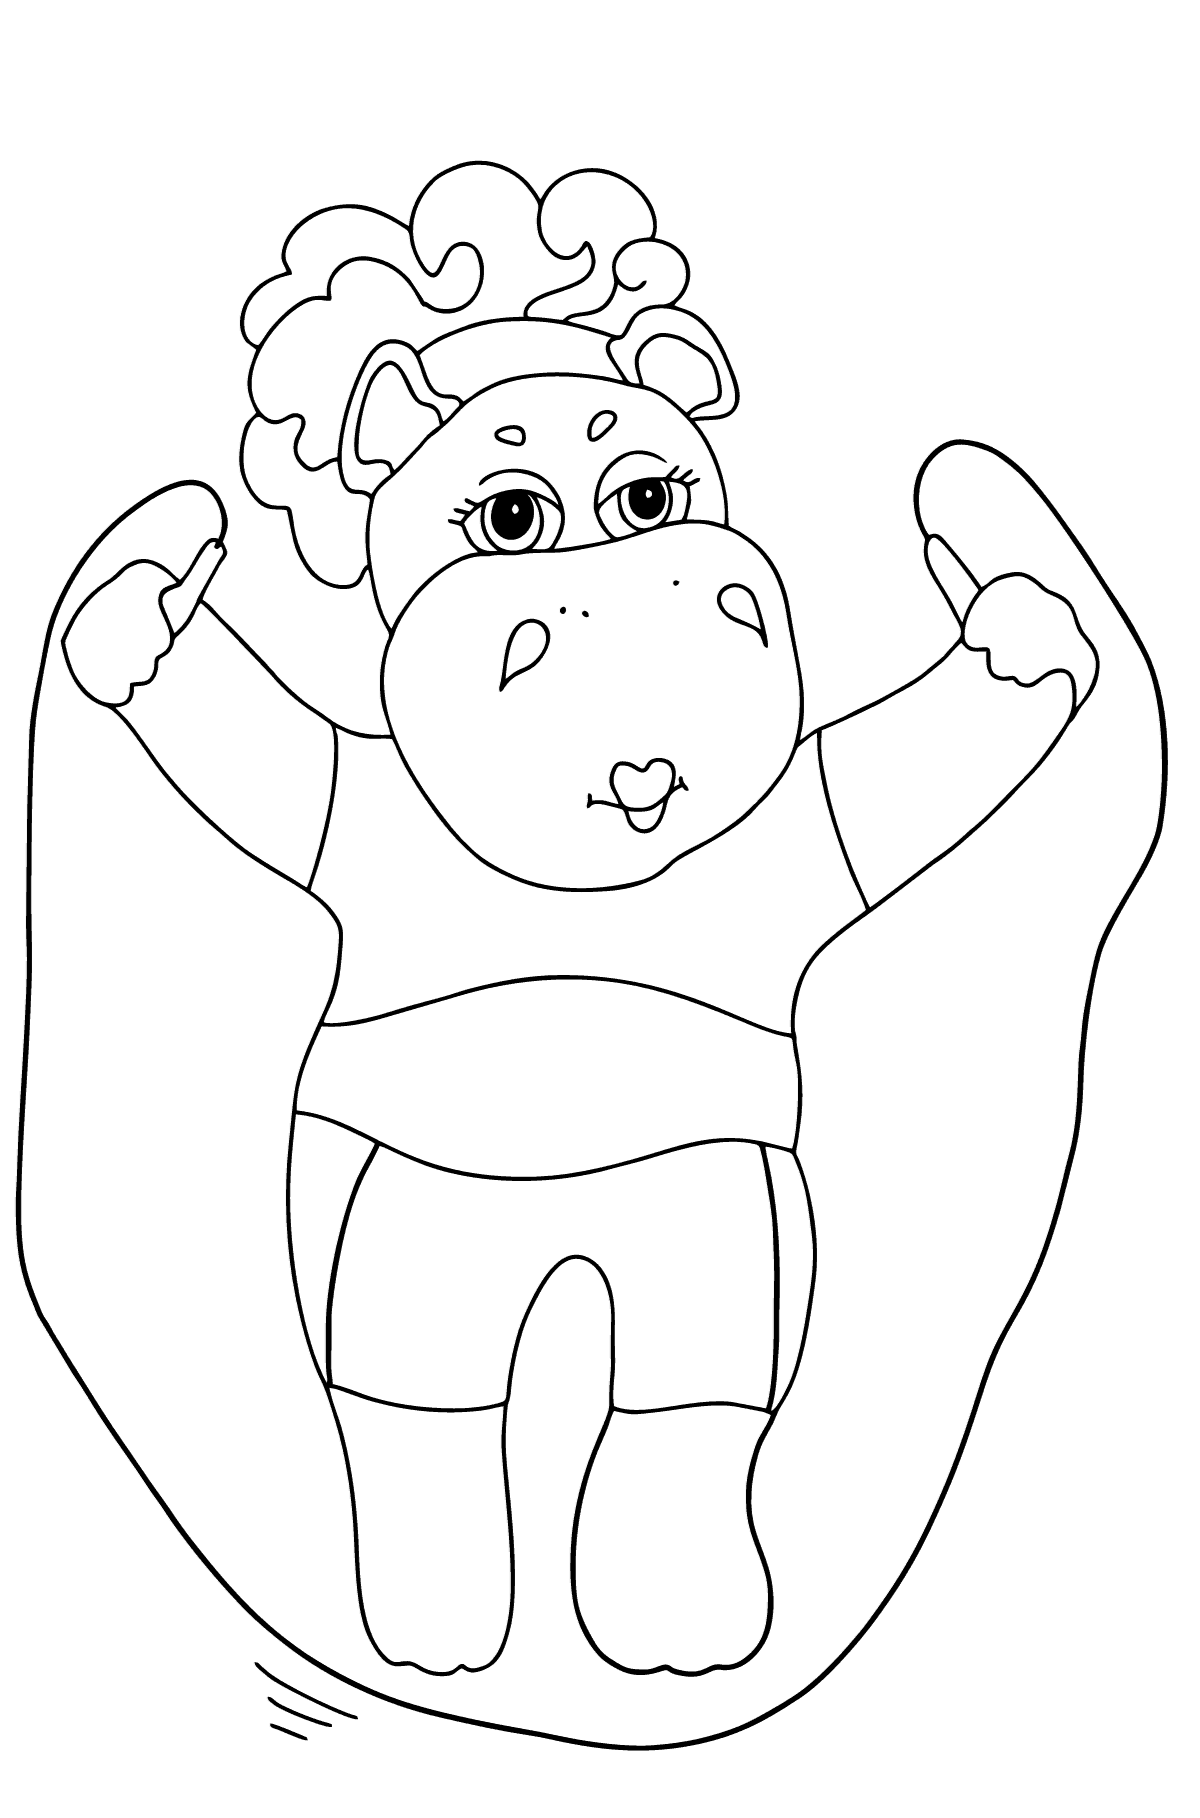 Dibujo de hipopótamo alegre para colorear - Dibujos para Colorear para Niños